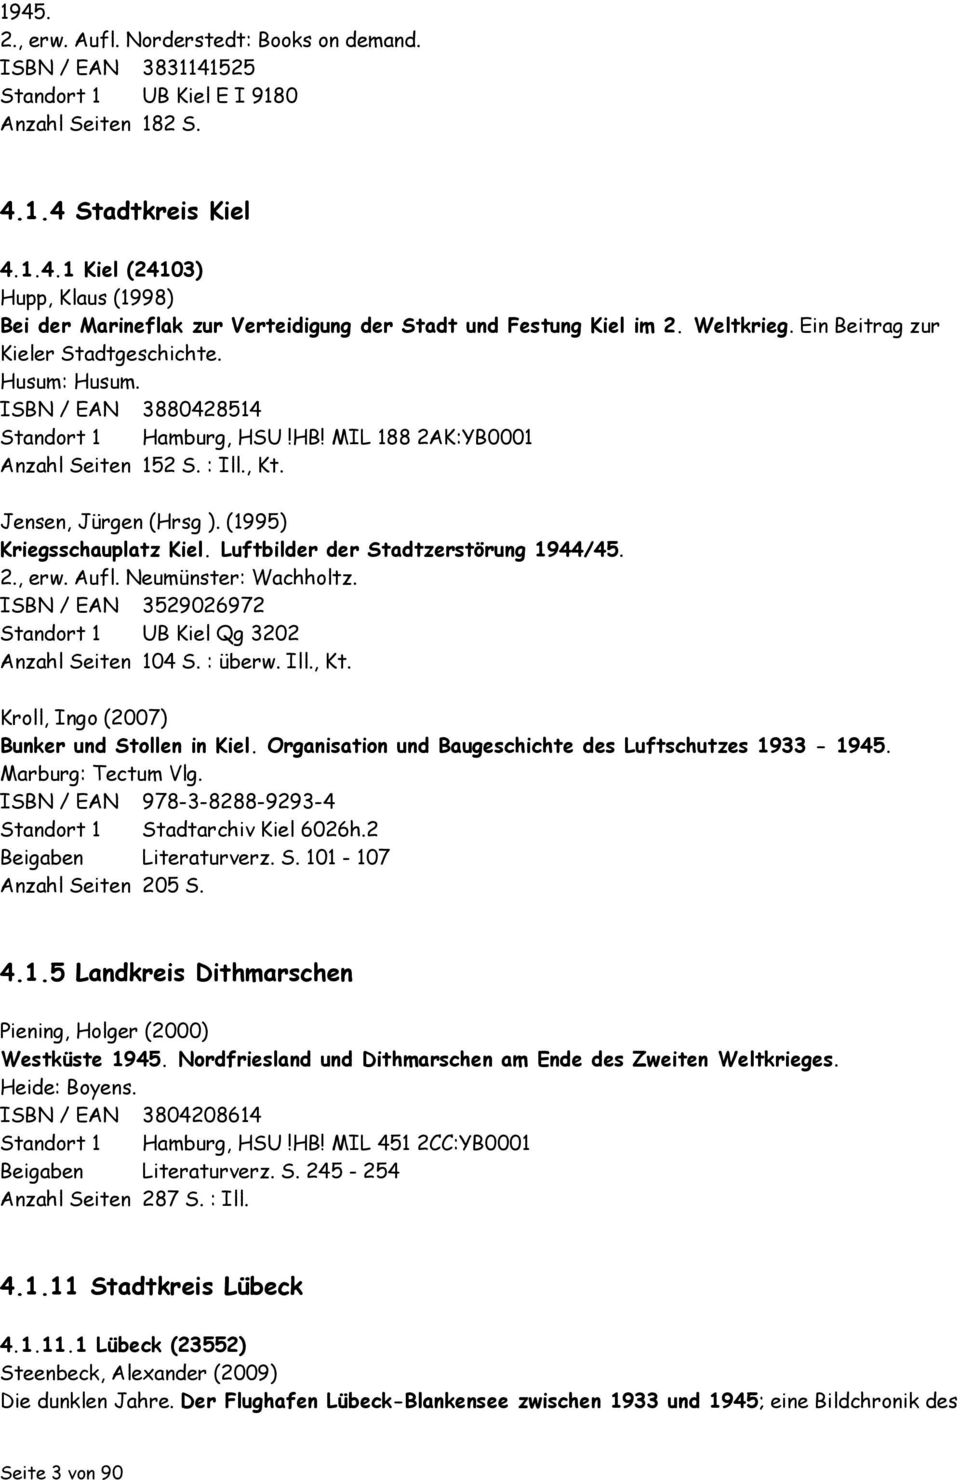 (1995) Kriegsschauplatz Kiel. Luftbilder der Stadtzerstörung 1944/45. 2., erw. Aufl. Neumünster: Wachholtz. ISBN / EAN 3529026972 Standort 1 UB Kiel Qg 3202 Anzahl Seiten 104 S. : überw. Ill., Kt.